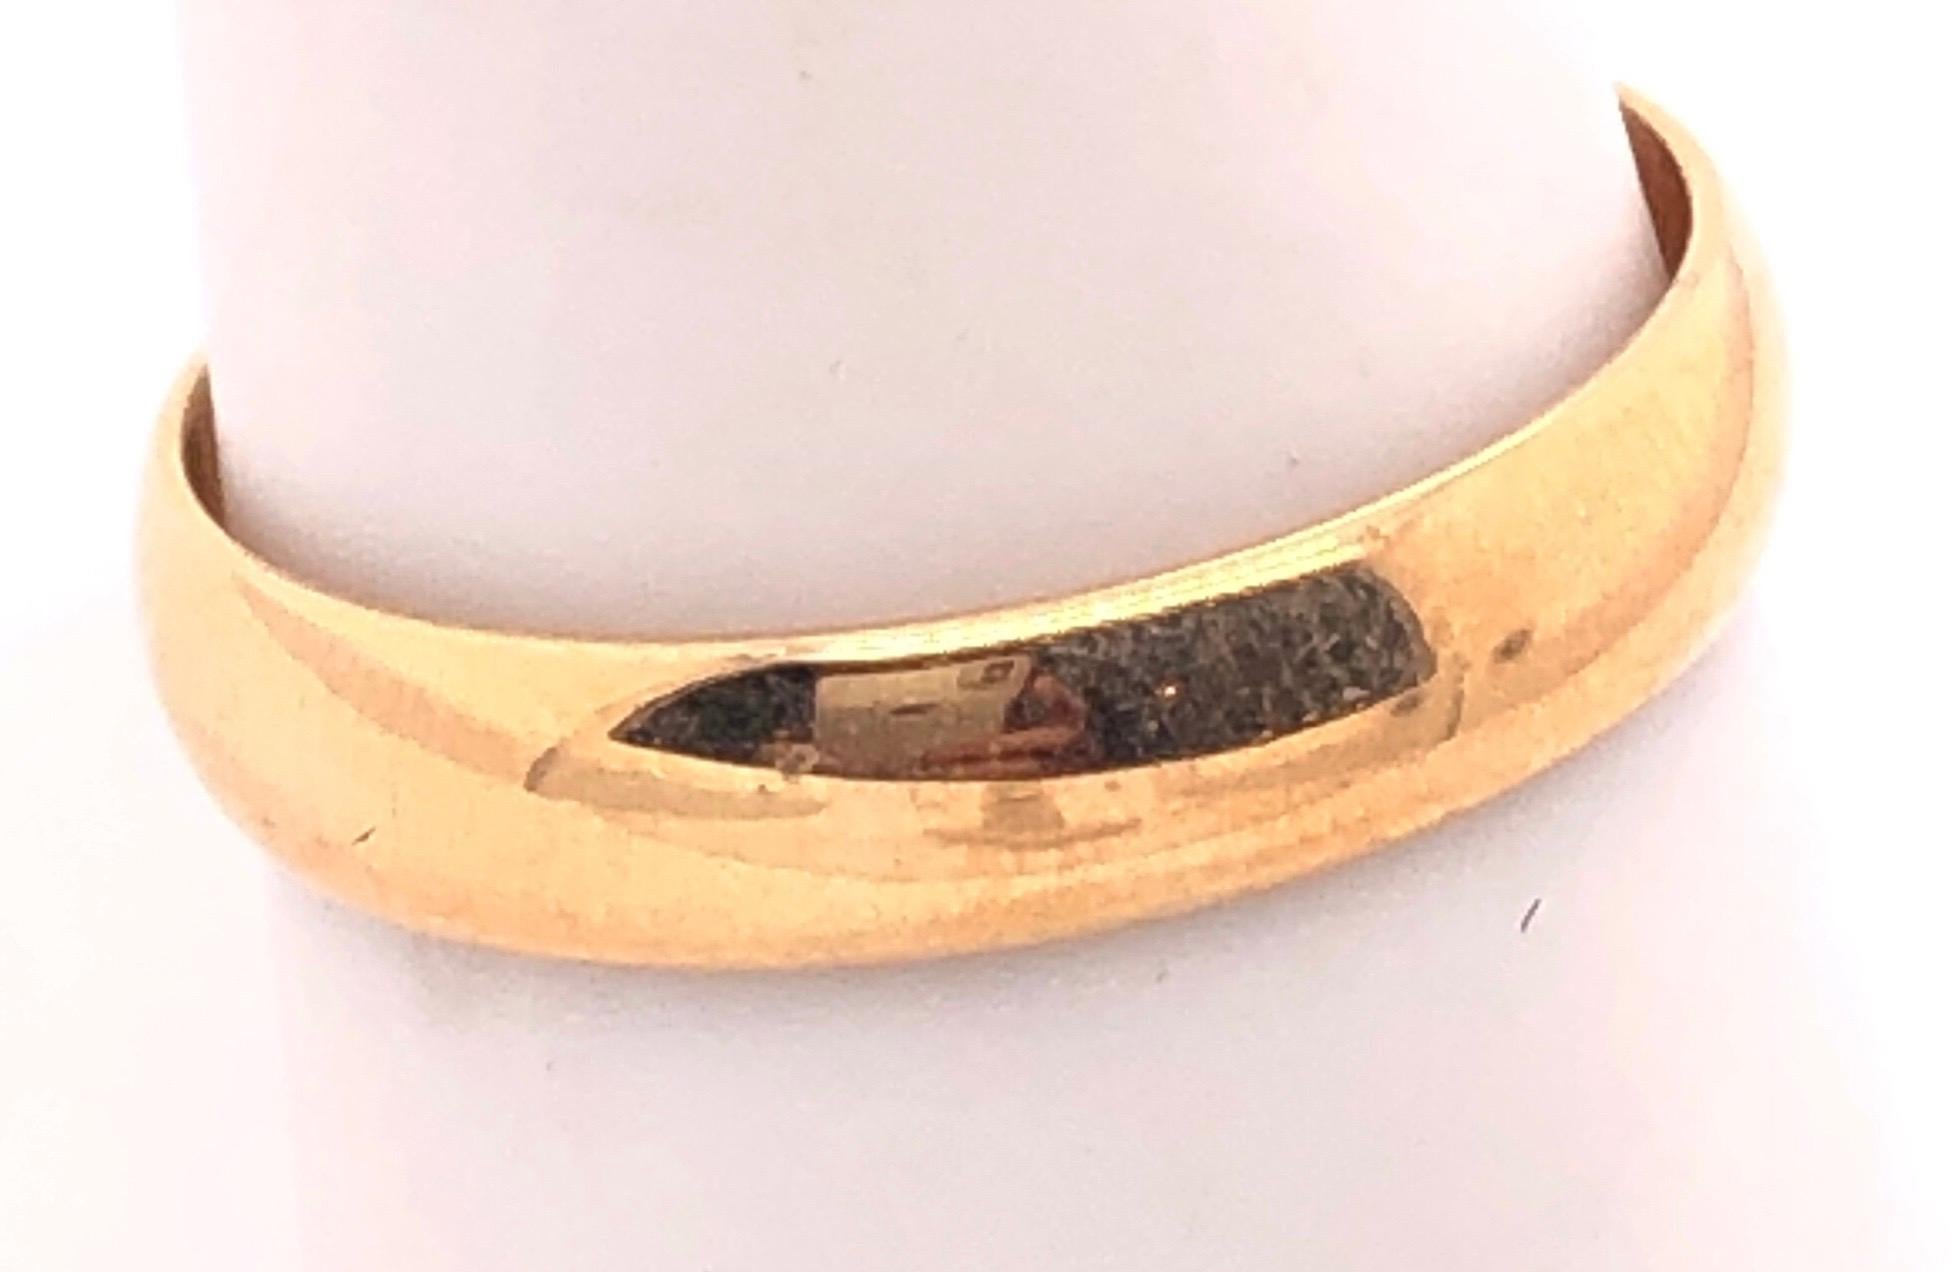 18 Karat Yellow Gold Wedding Ring/Band Size 8.5.
3.3 grams total weight.
